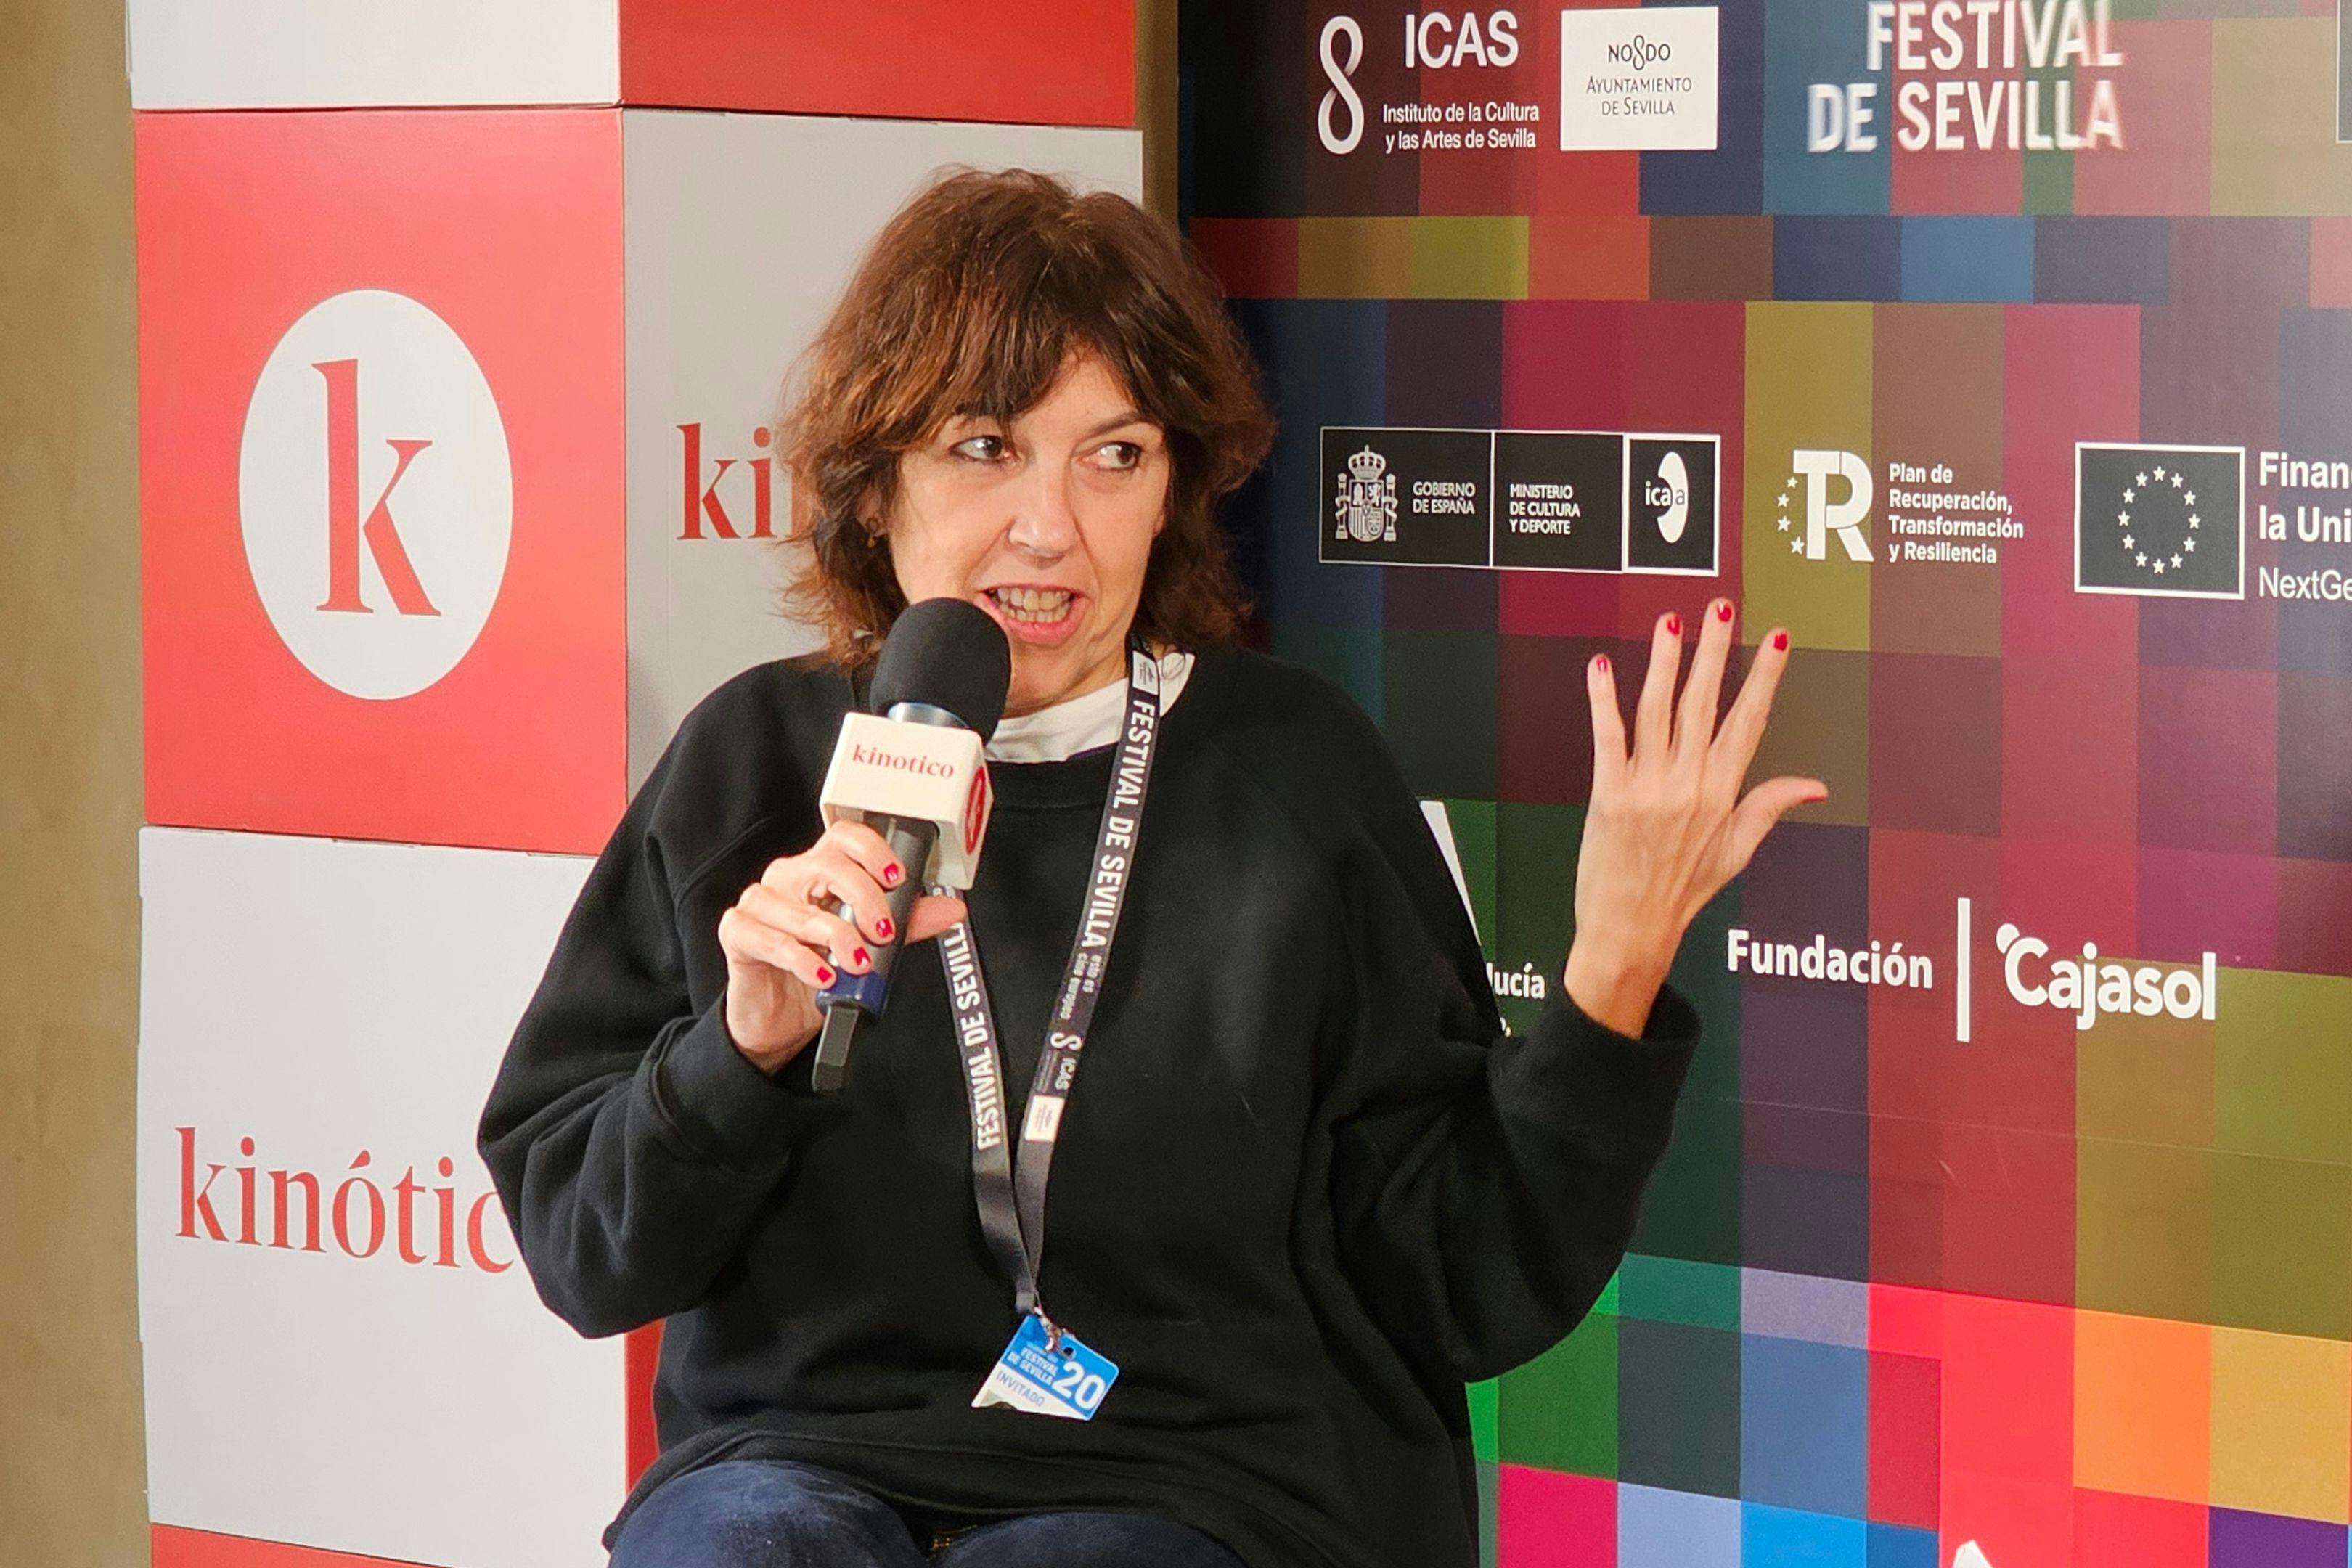 Virginia García del Pino conversa con Kinótico por la presentación de su película ‘La estafa del amor’ en el Festival de Sevilla